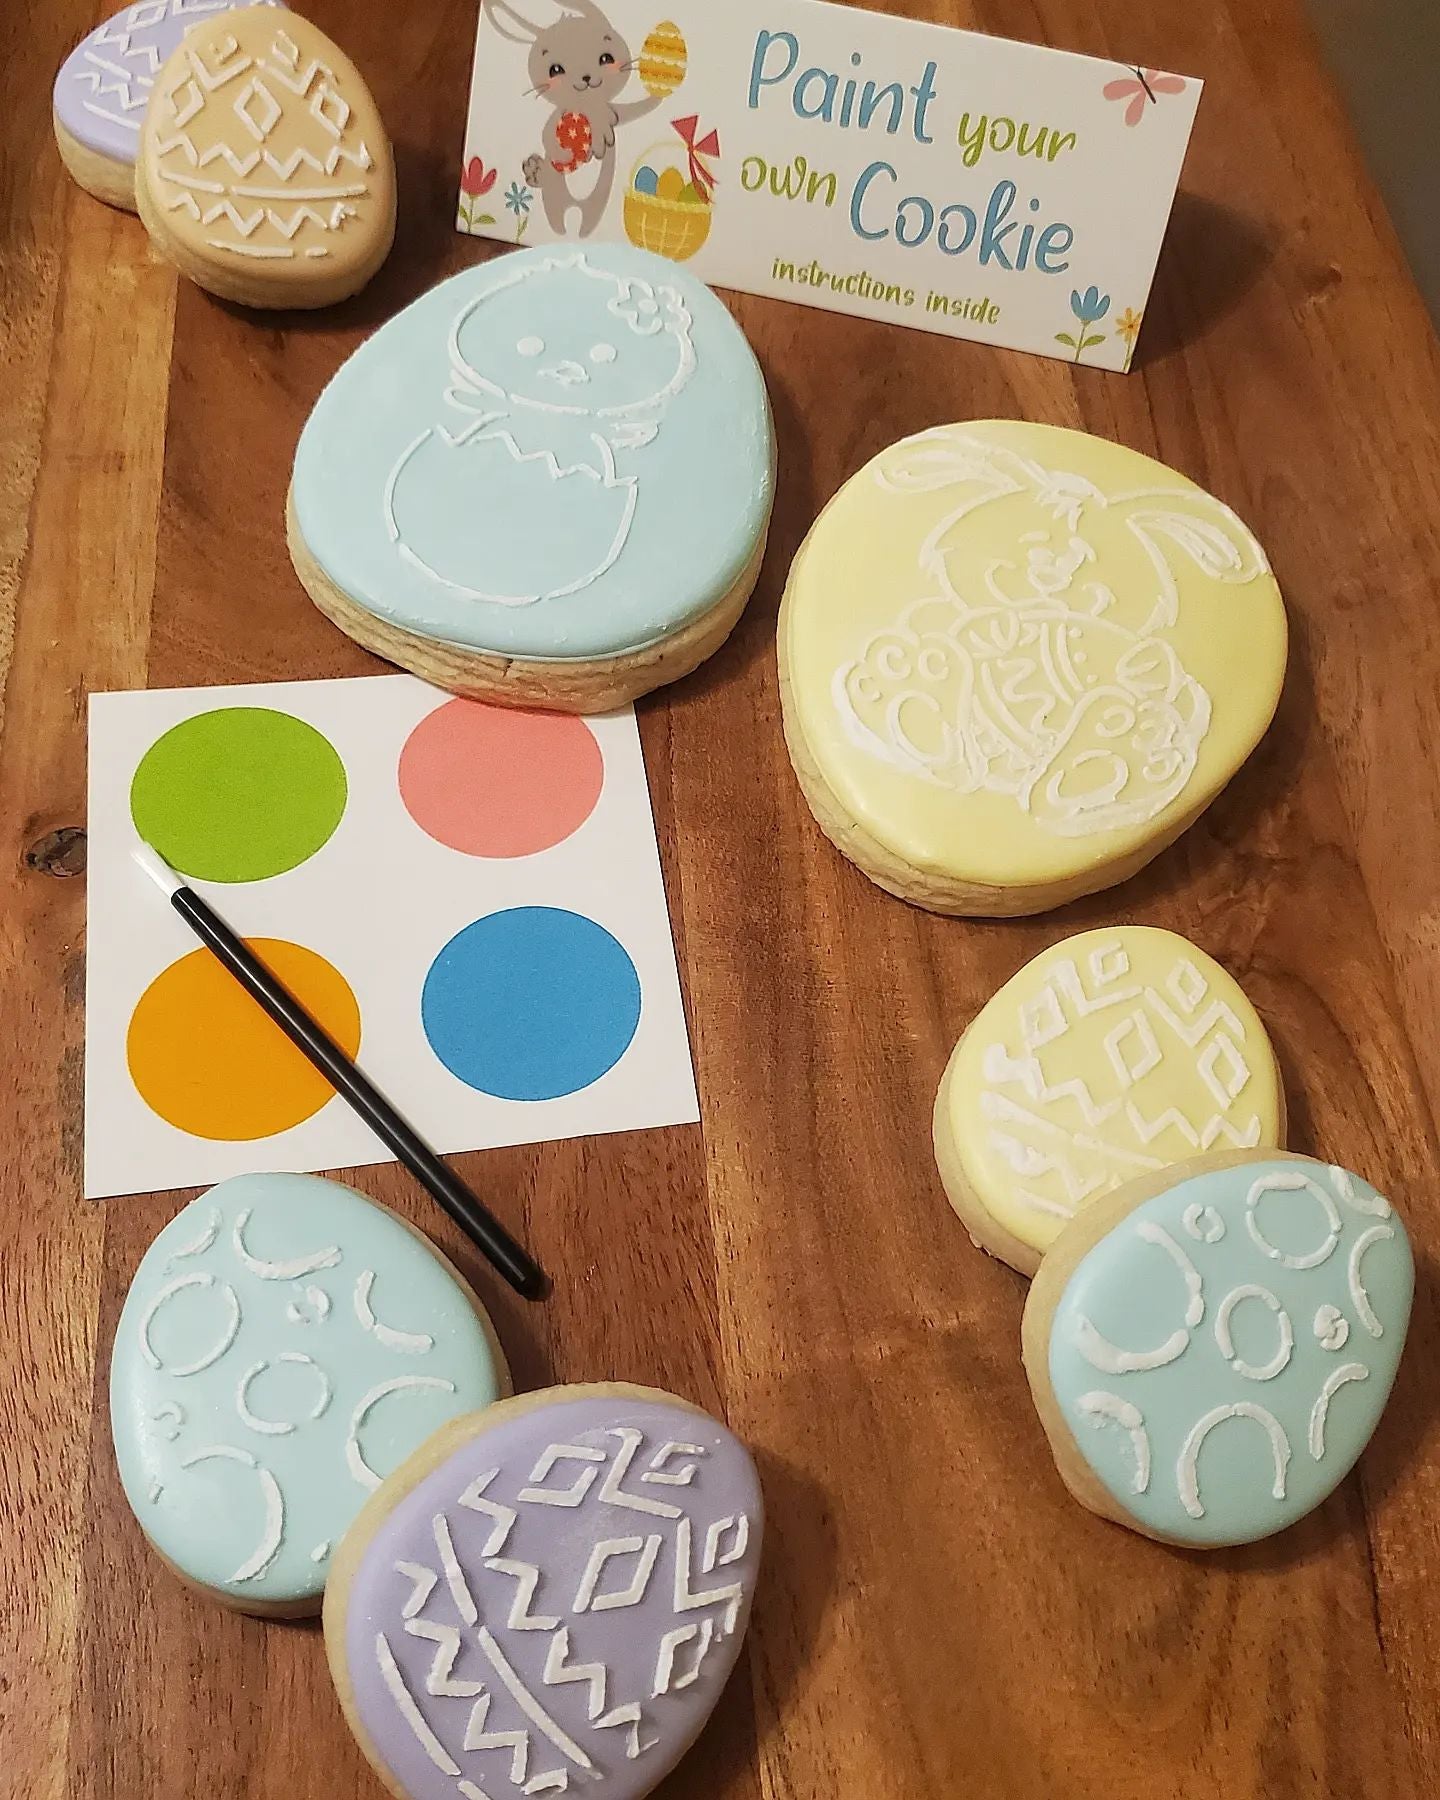 Designer Cookies